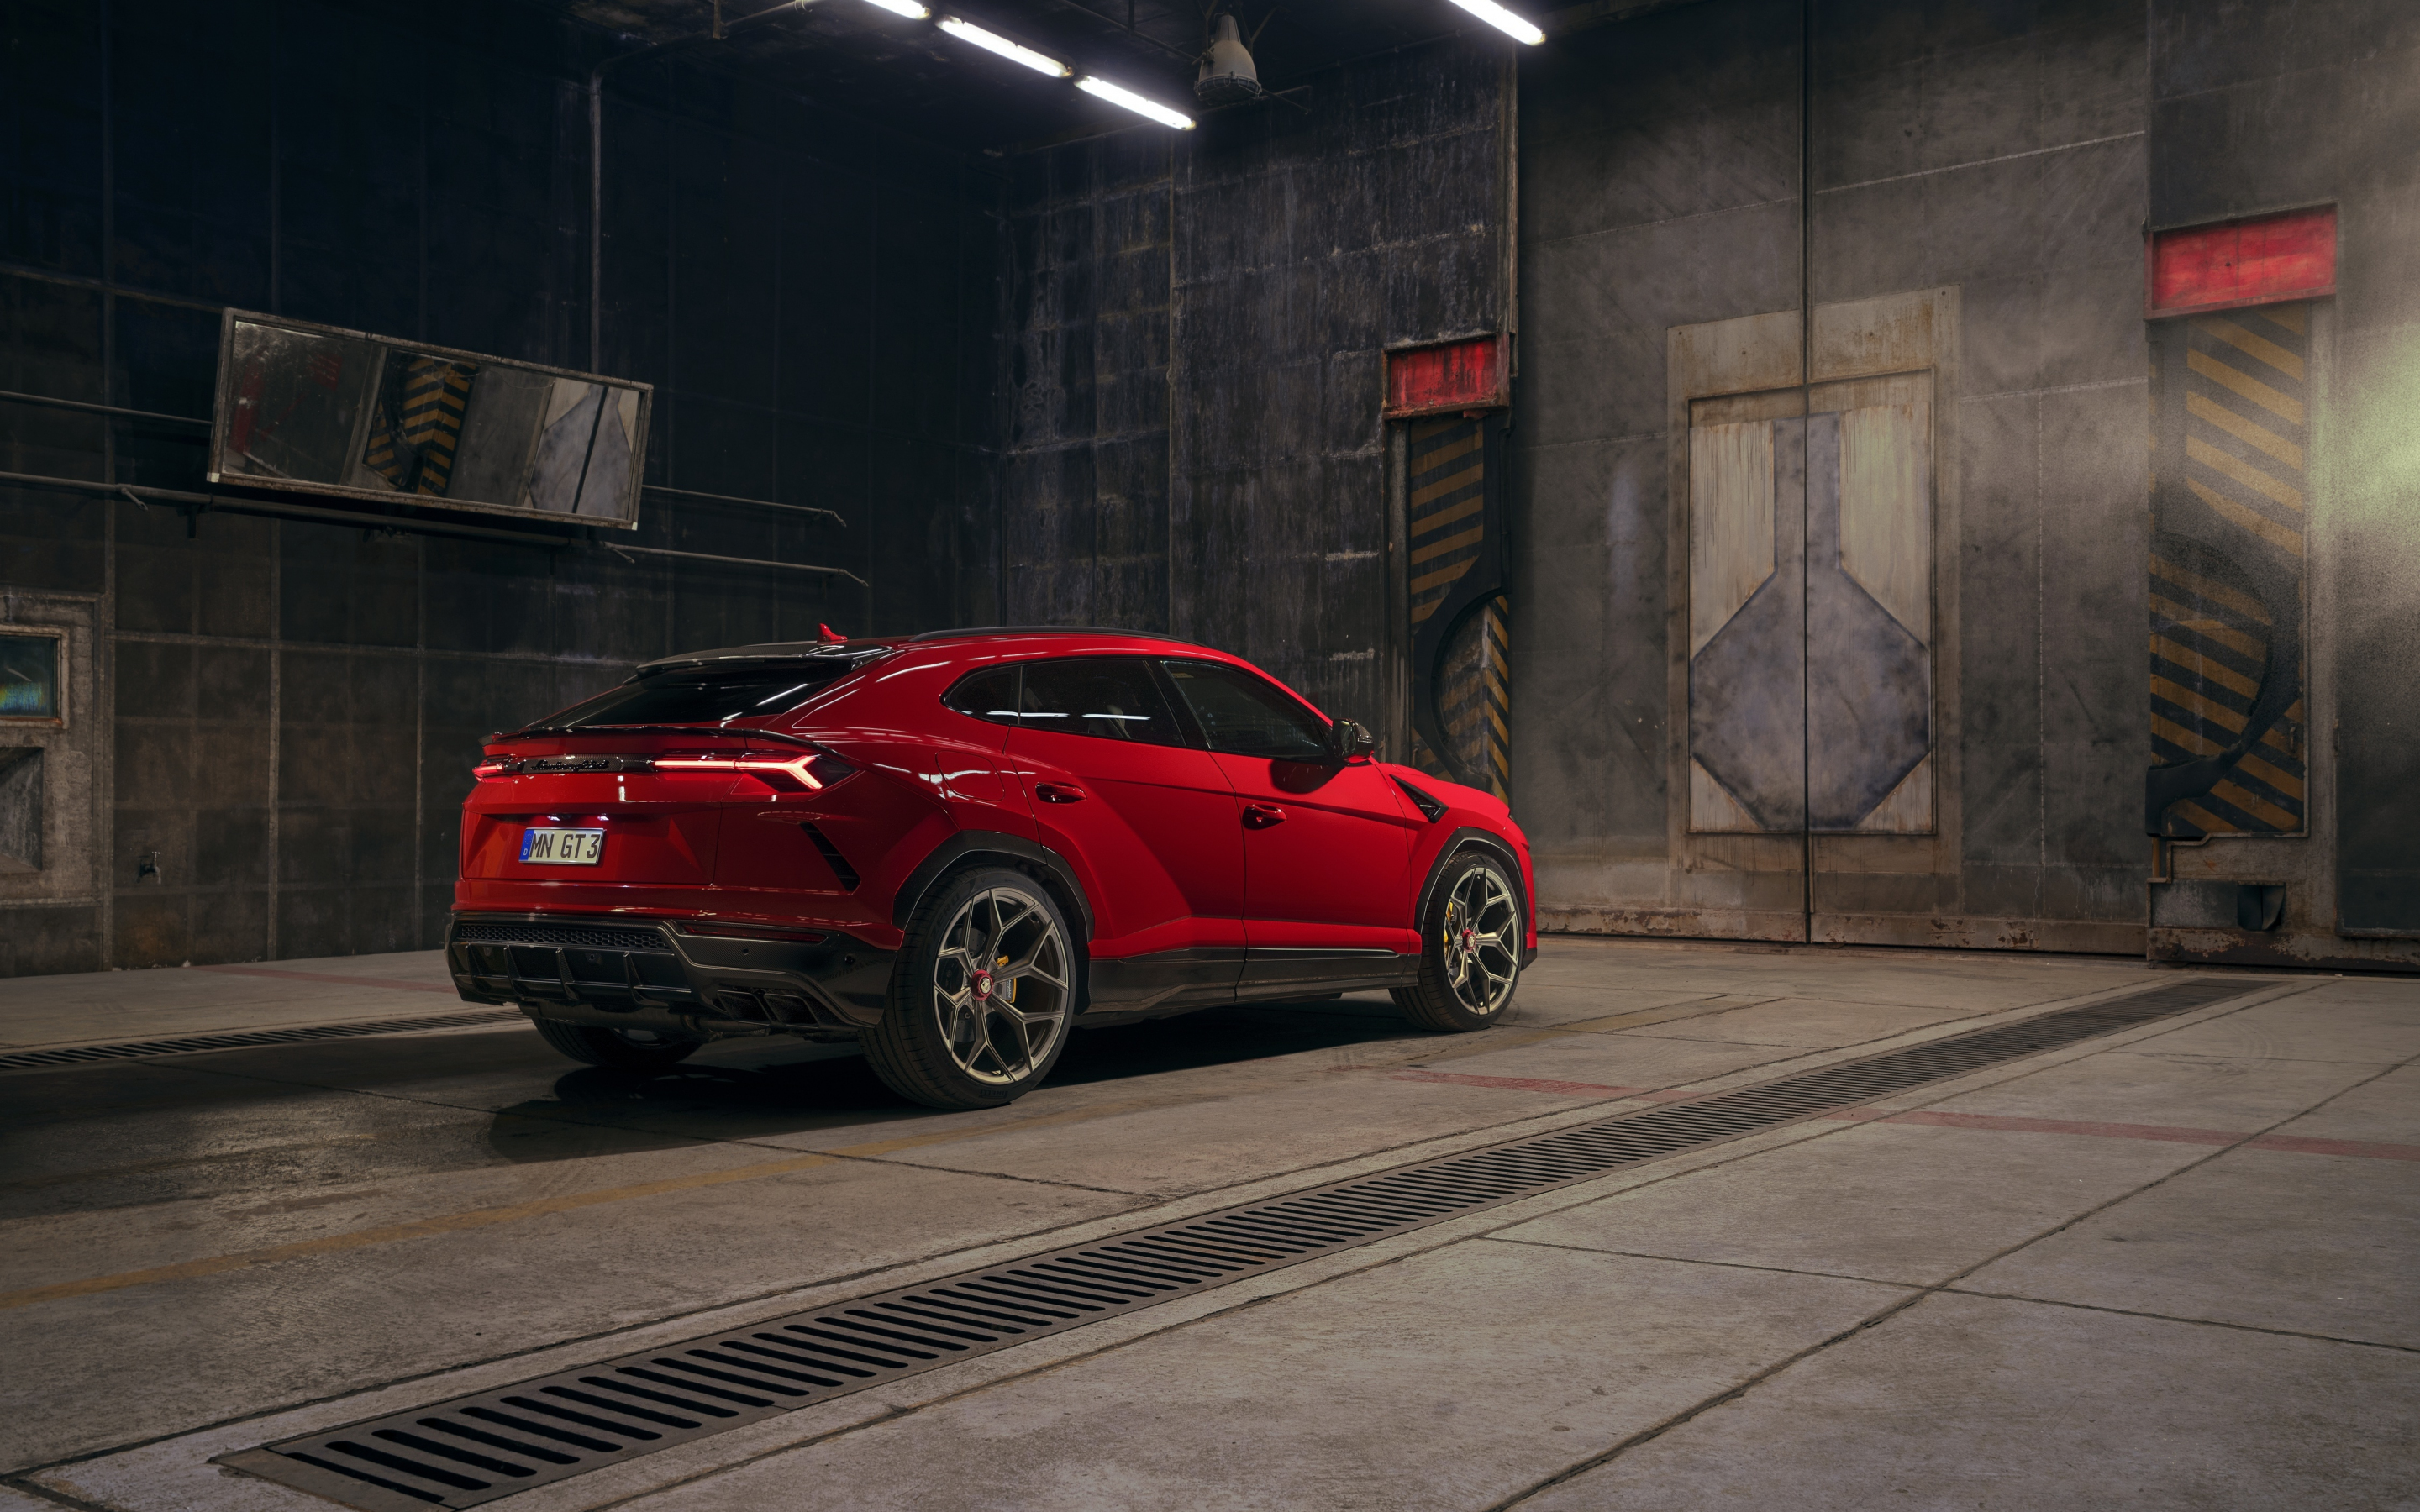 2019, Lamborghini Urus, red Lamborghini car, 2880x1800 wallpaper